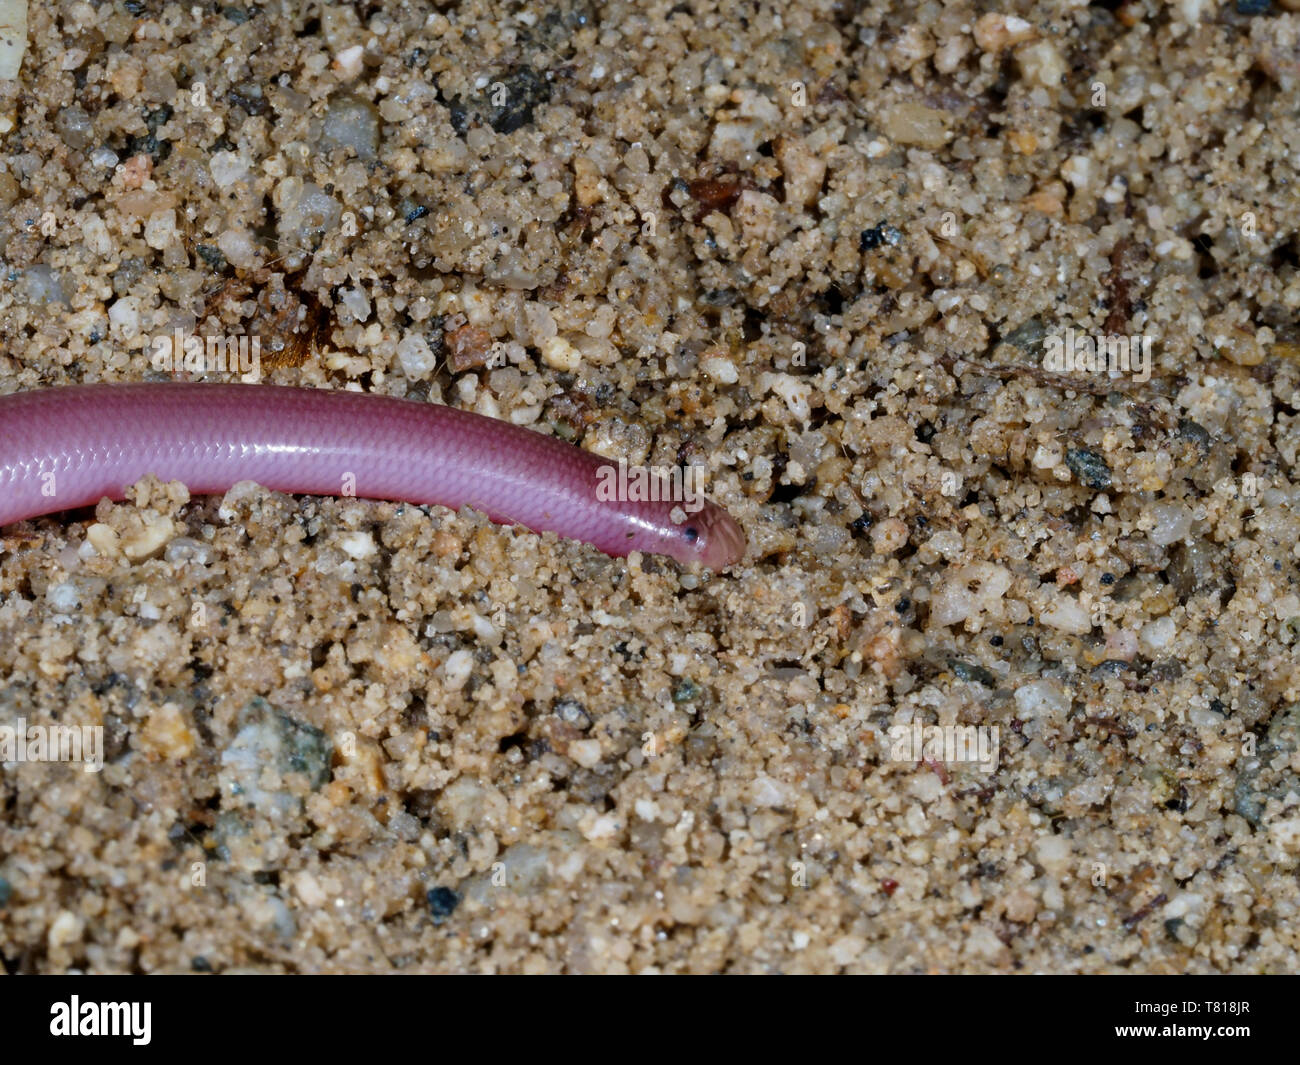 Europäische Wurm Schlange oder blinde Schlange, Typhlops vermicularis, Bulgarien, April 2019 Stockfoto